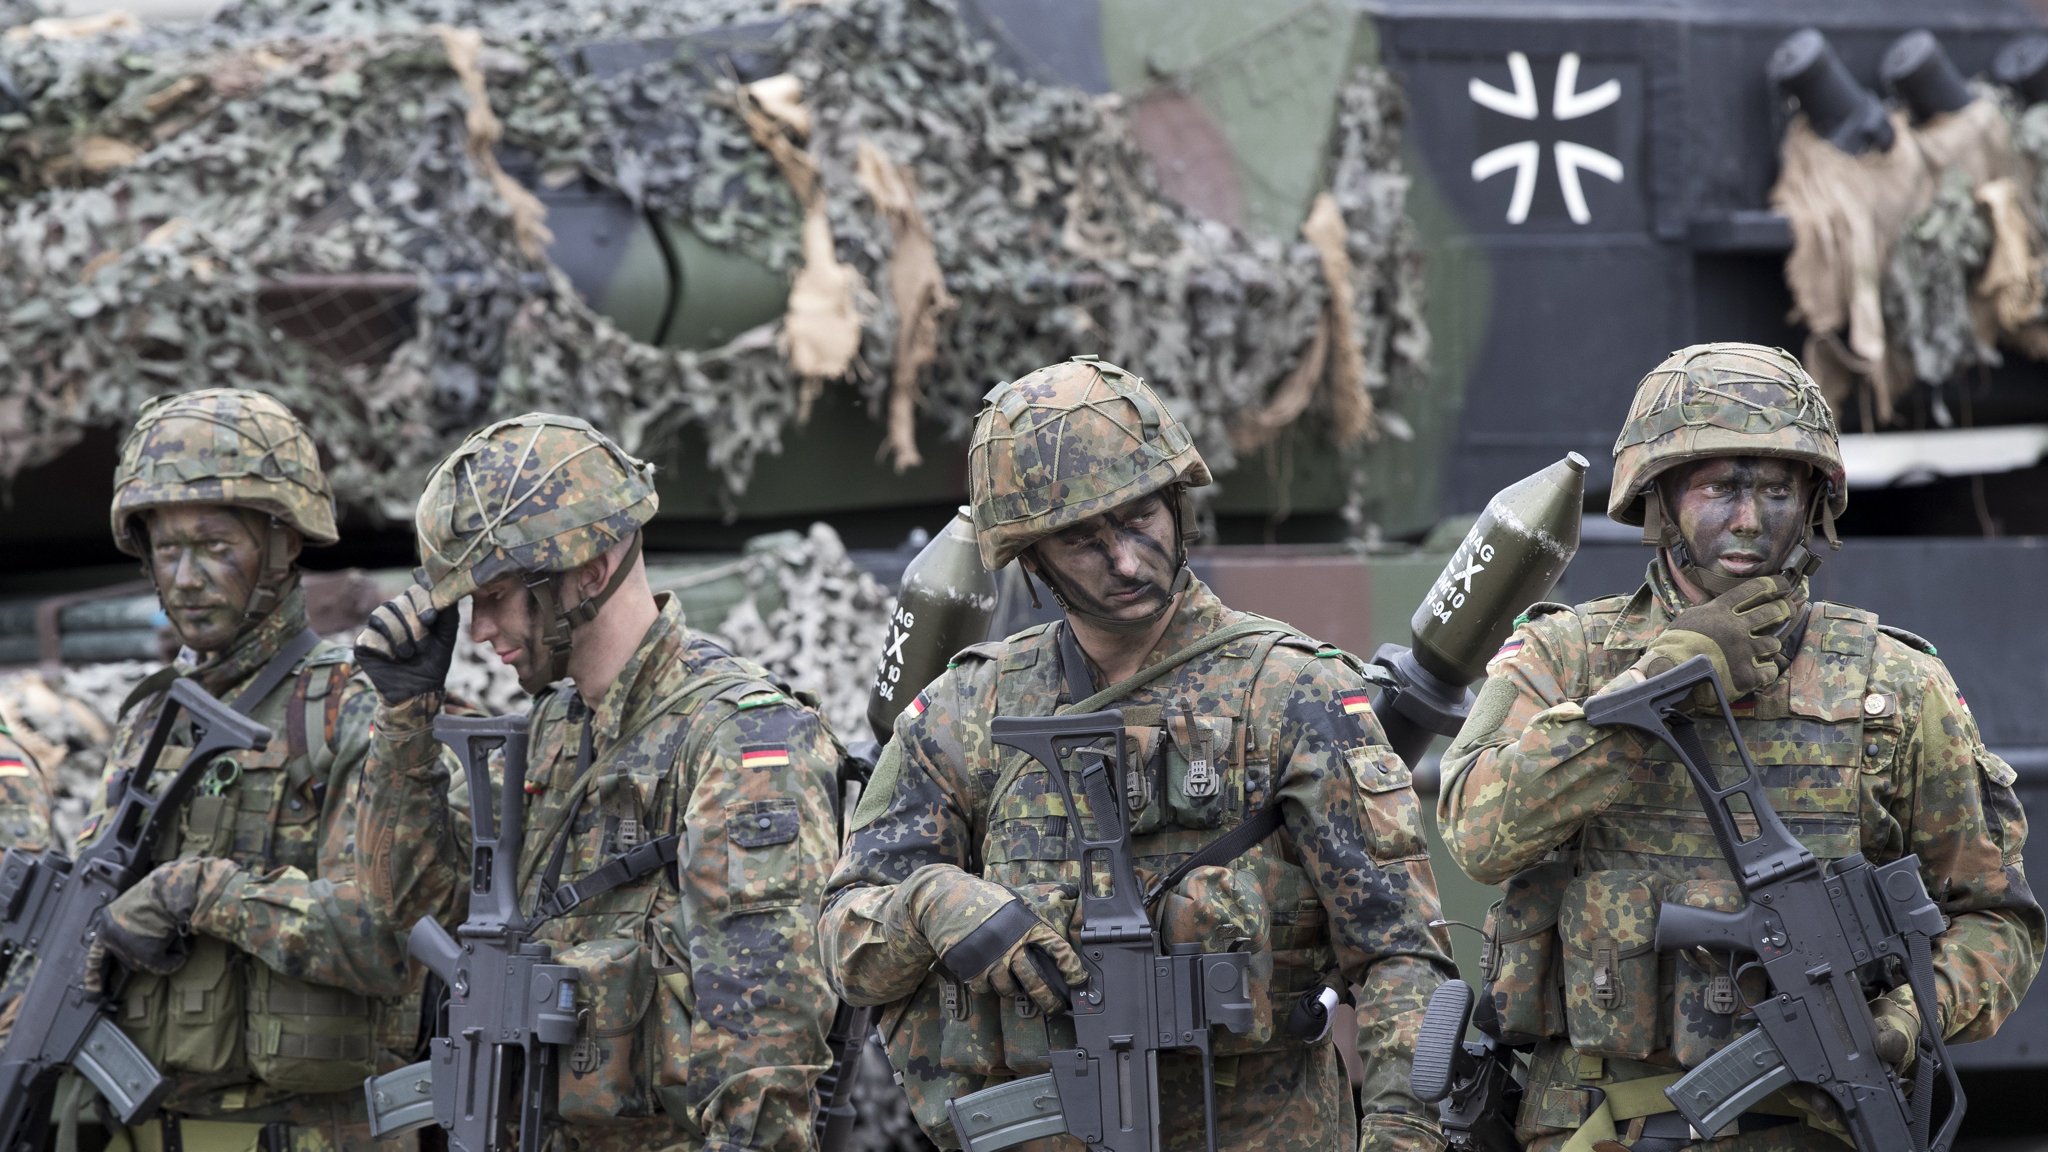 Bundestag to Vote on Increased German Military Spending